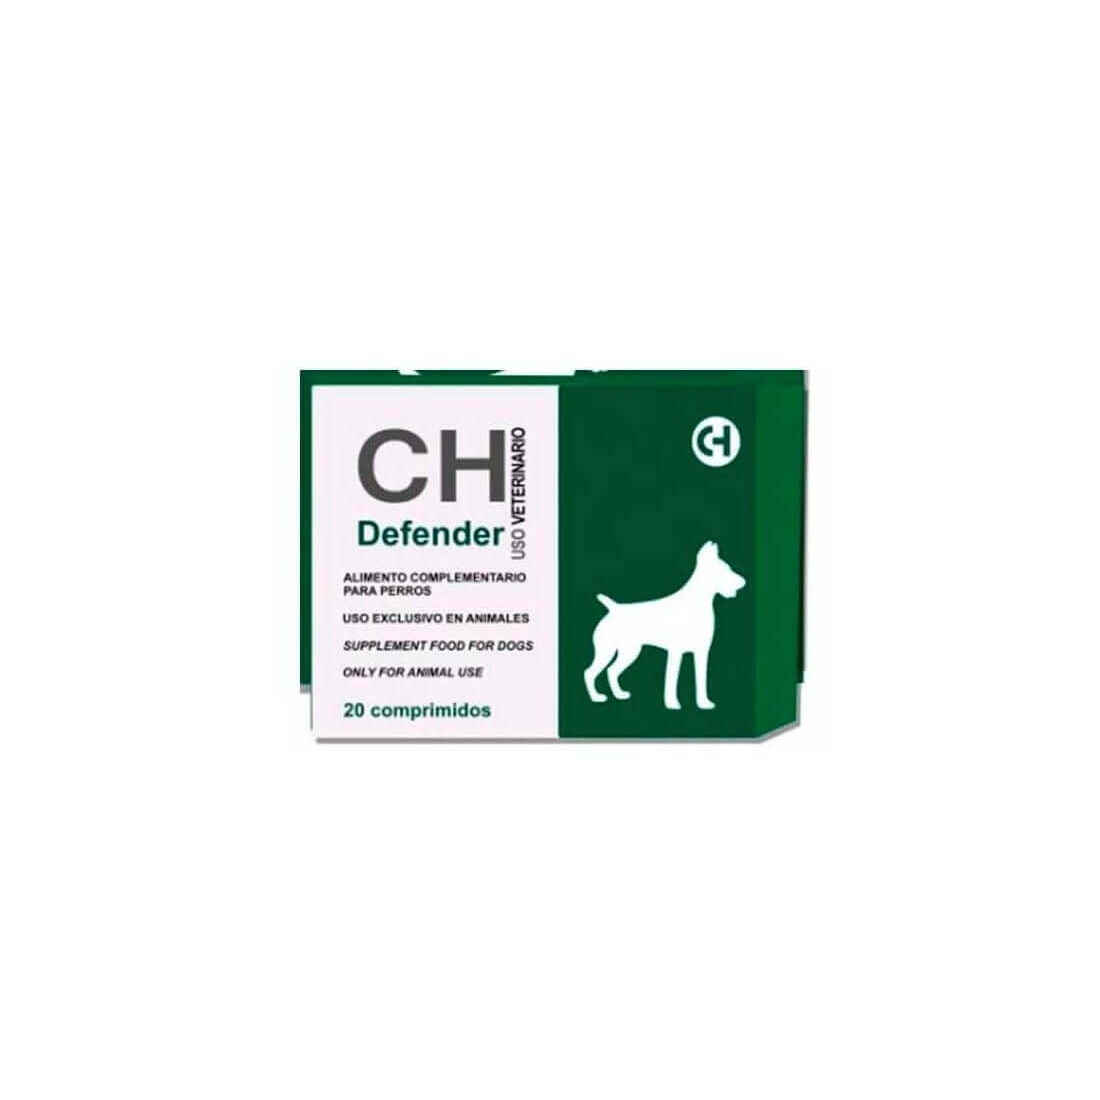 Defender, antidiareic, 20 comprimate Chemical Iberica